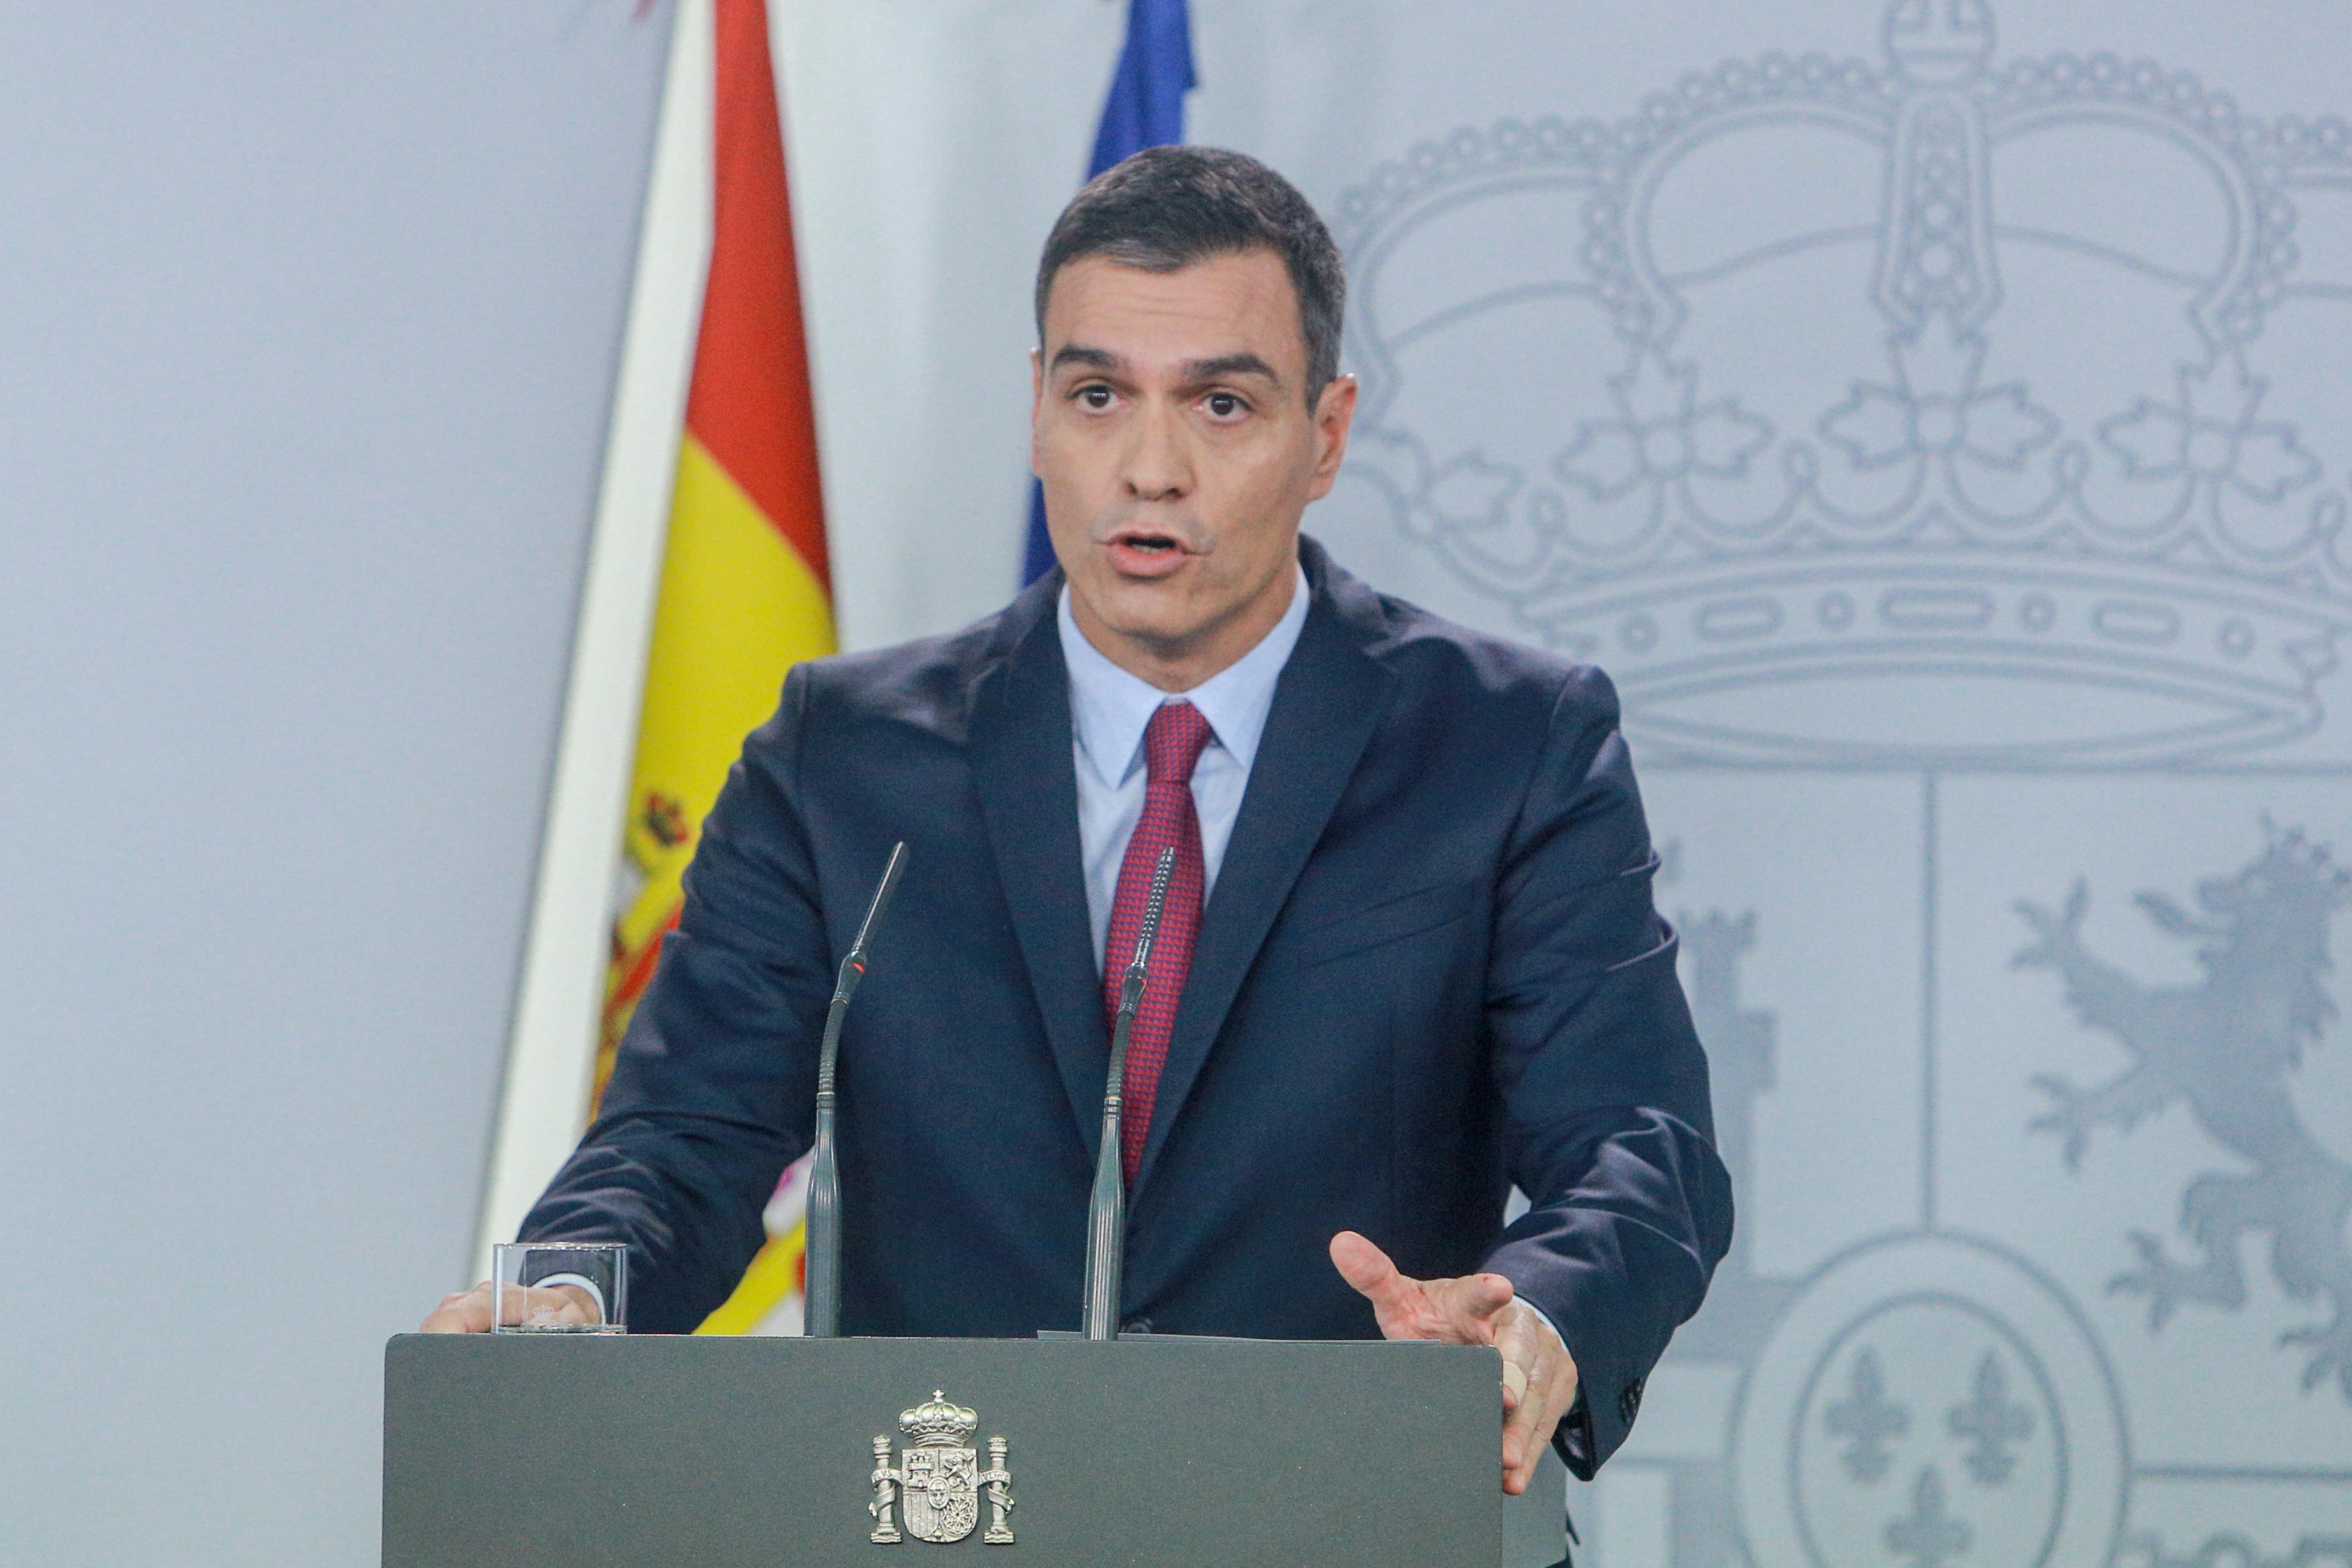 El presidente del Gobierno Pedro Sánchez realiza una intervención en el Palacio de La Moncloa en Madrid (España) a 16 de octubre de 2019 